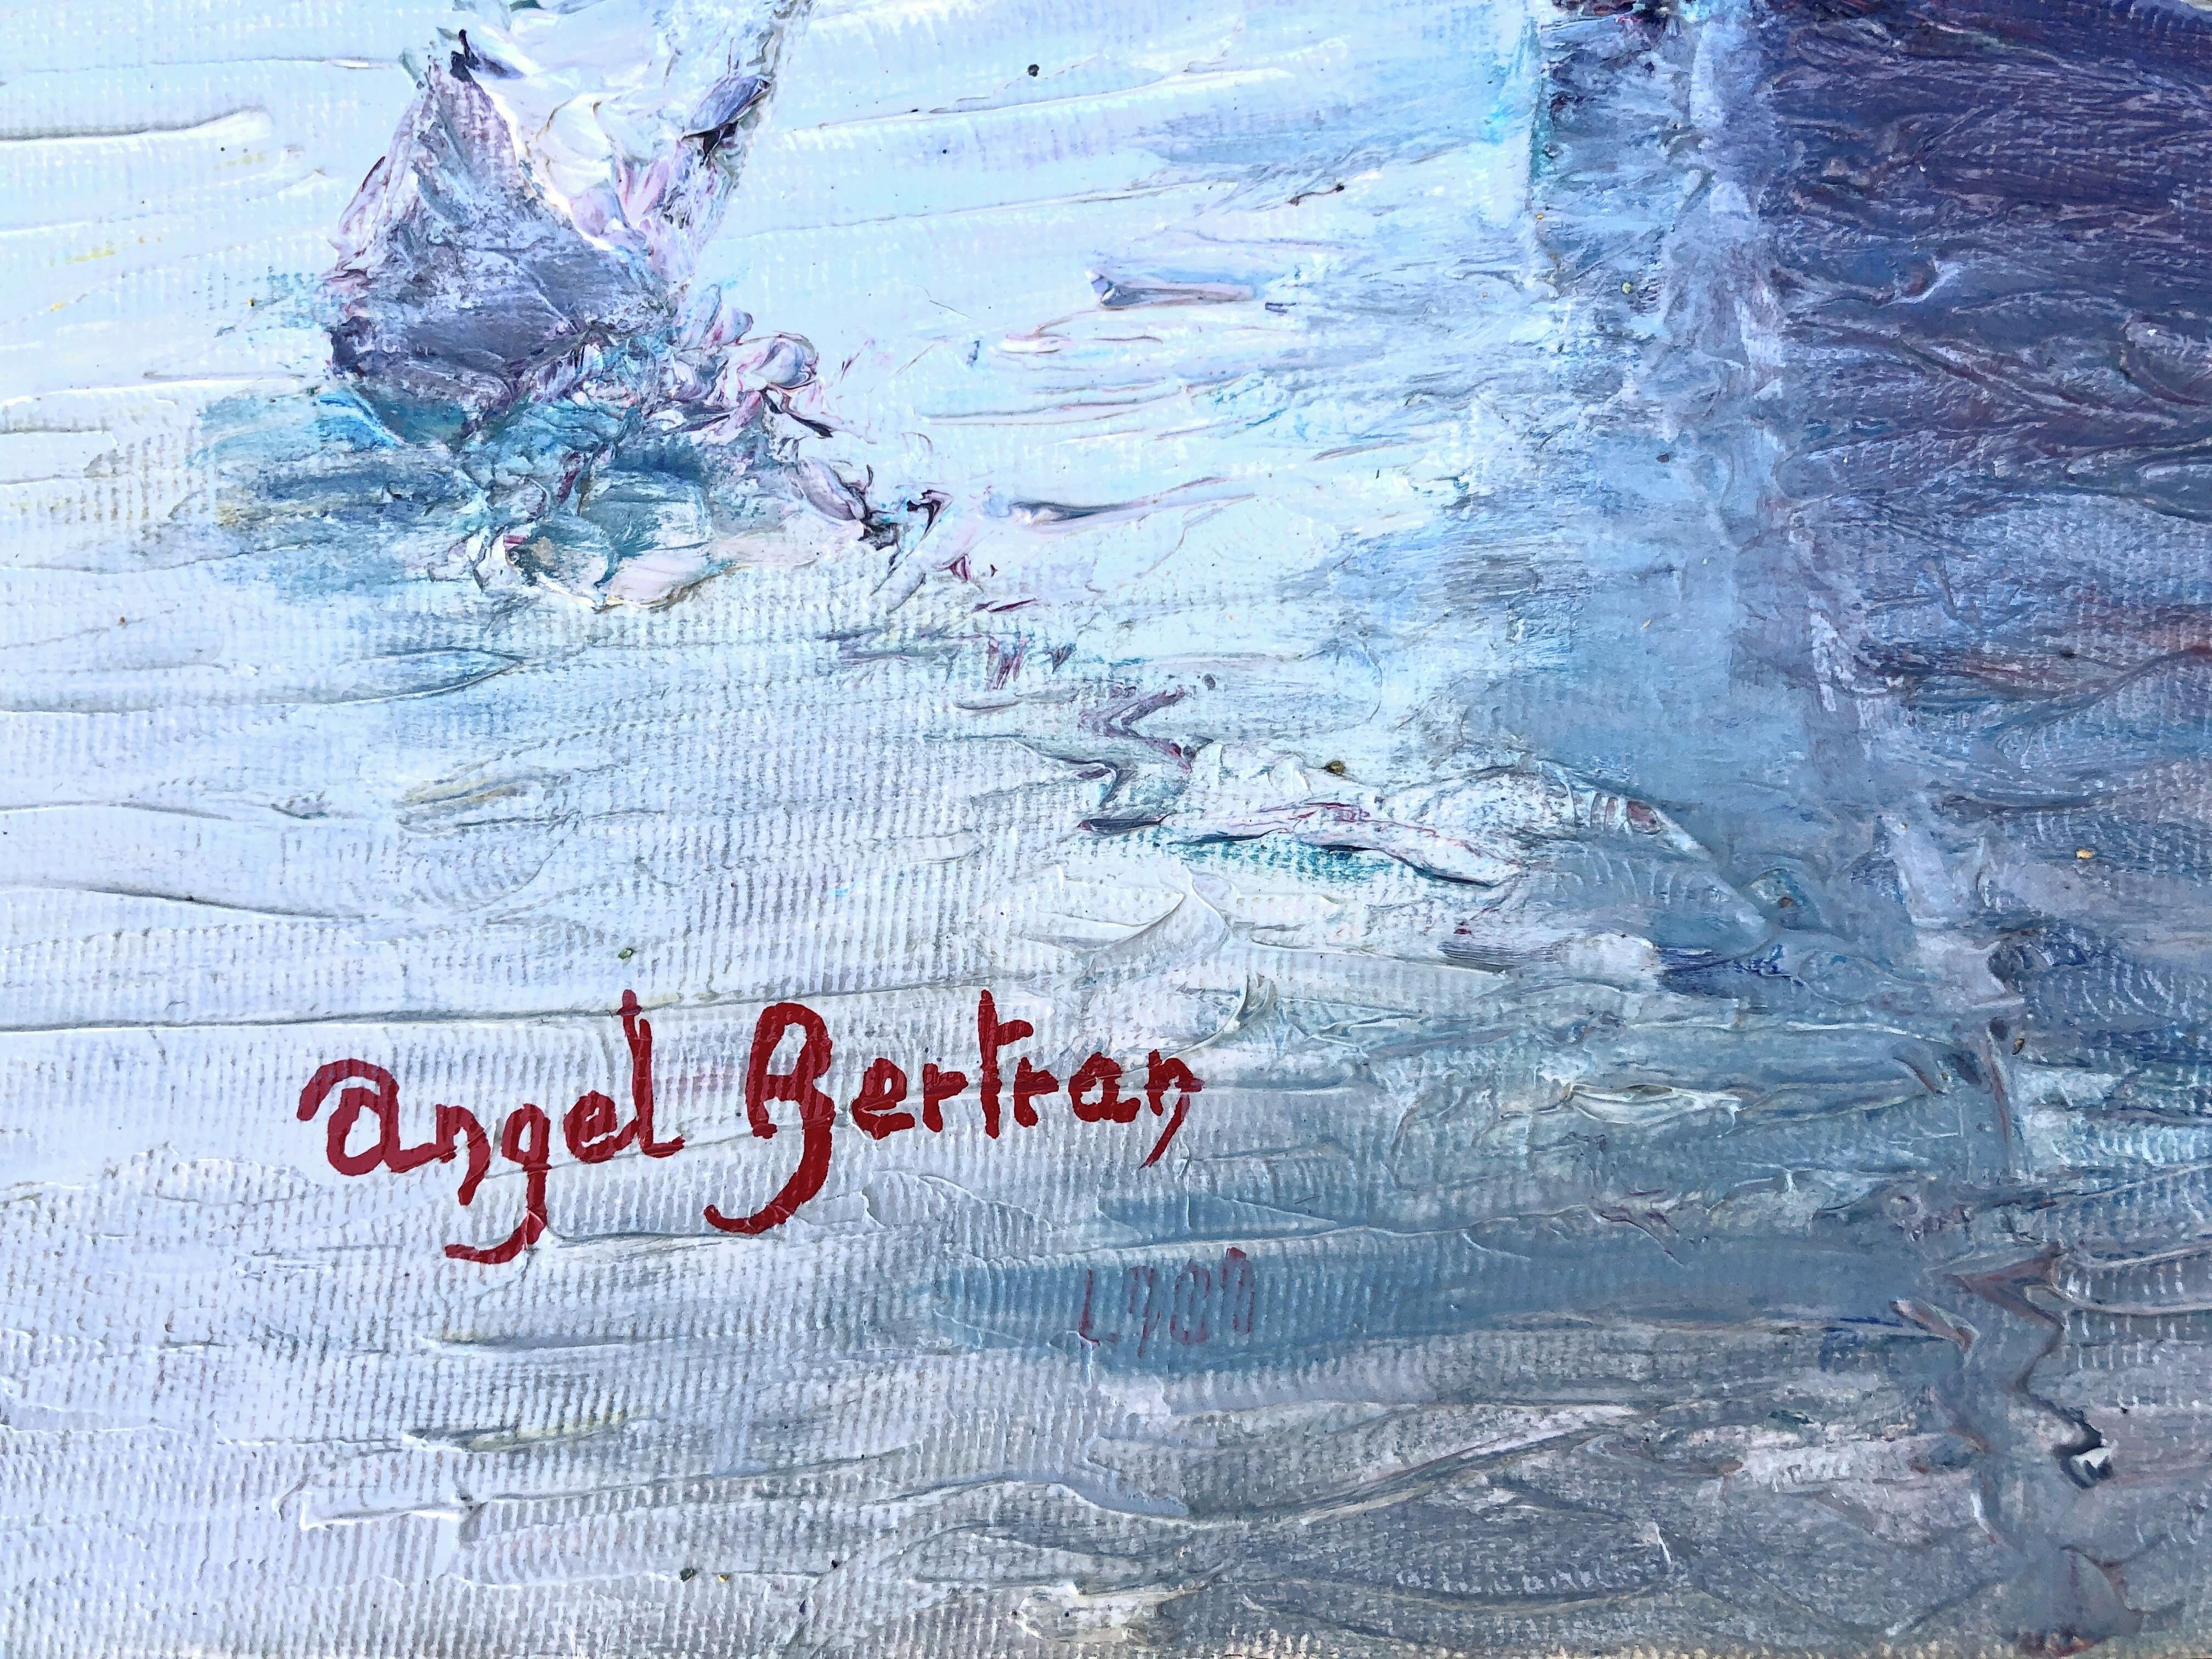 Port de plaisance, port de sport huile sur toile peinture paysage marin espagnol - Painting de Angel Bertran Montserrat